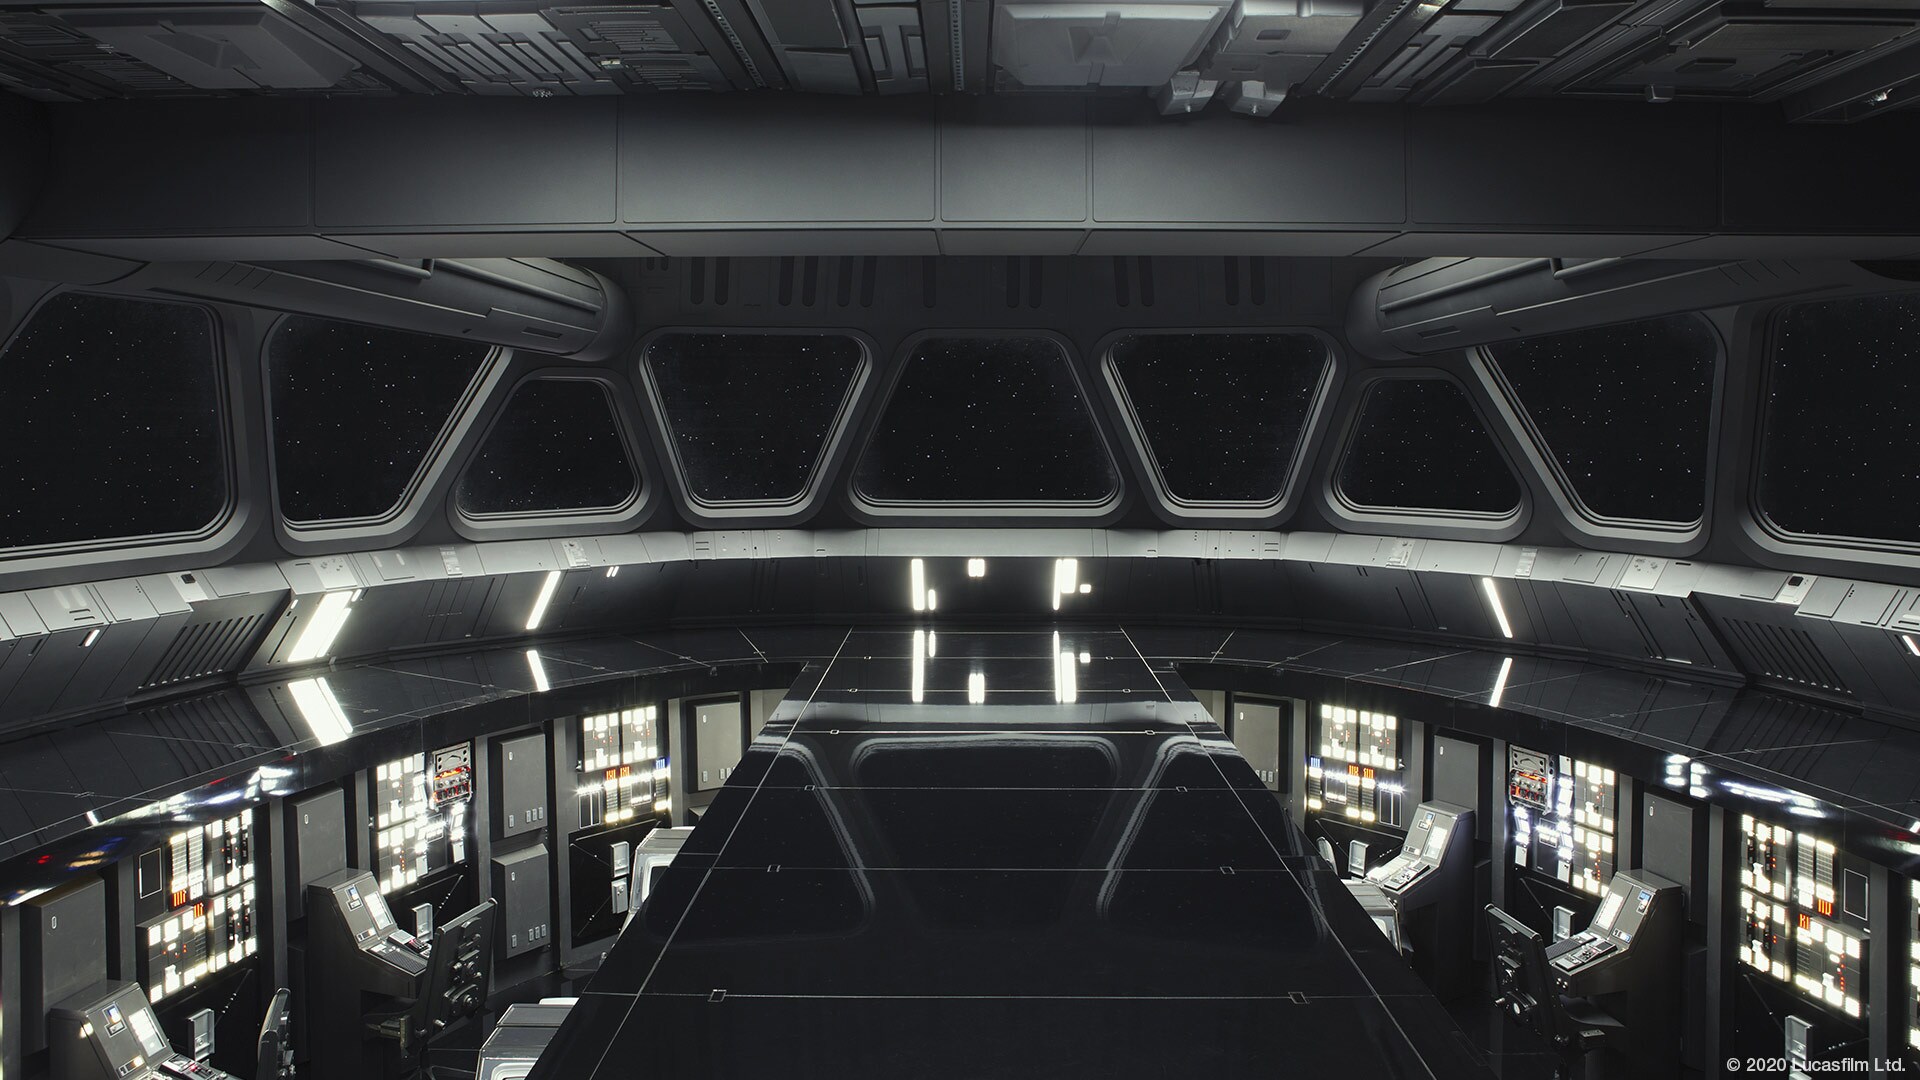 Star Wars virtual background: Imperial Star Destroyer bridge